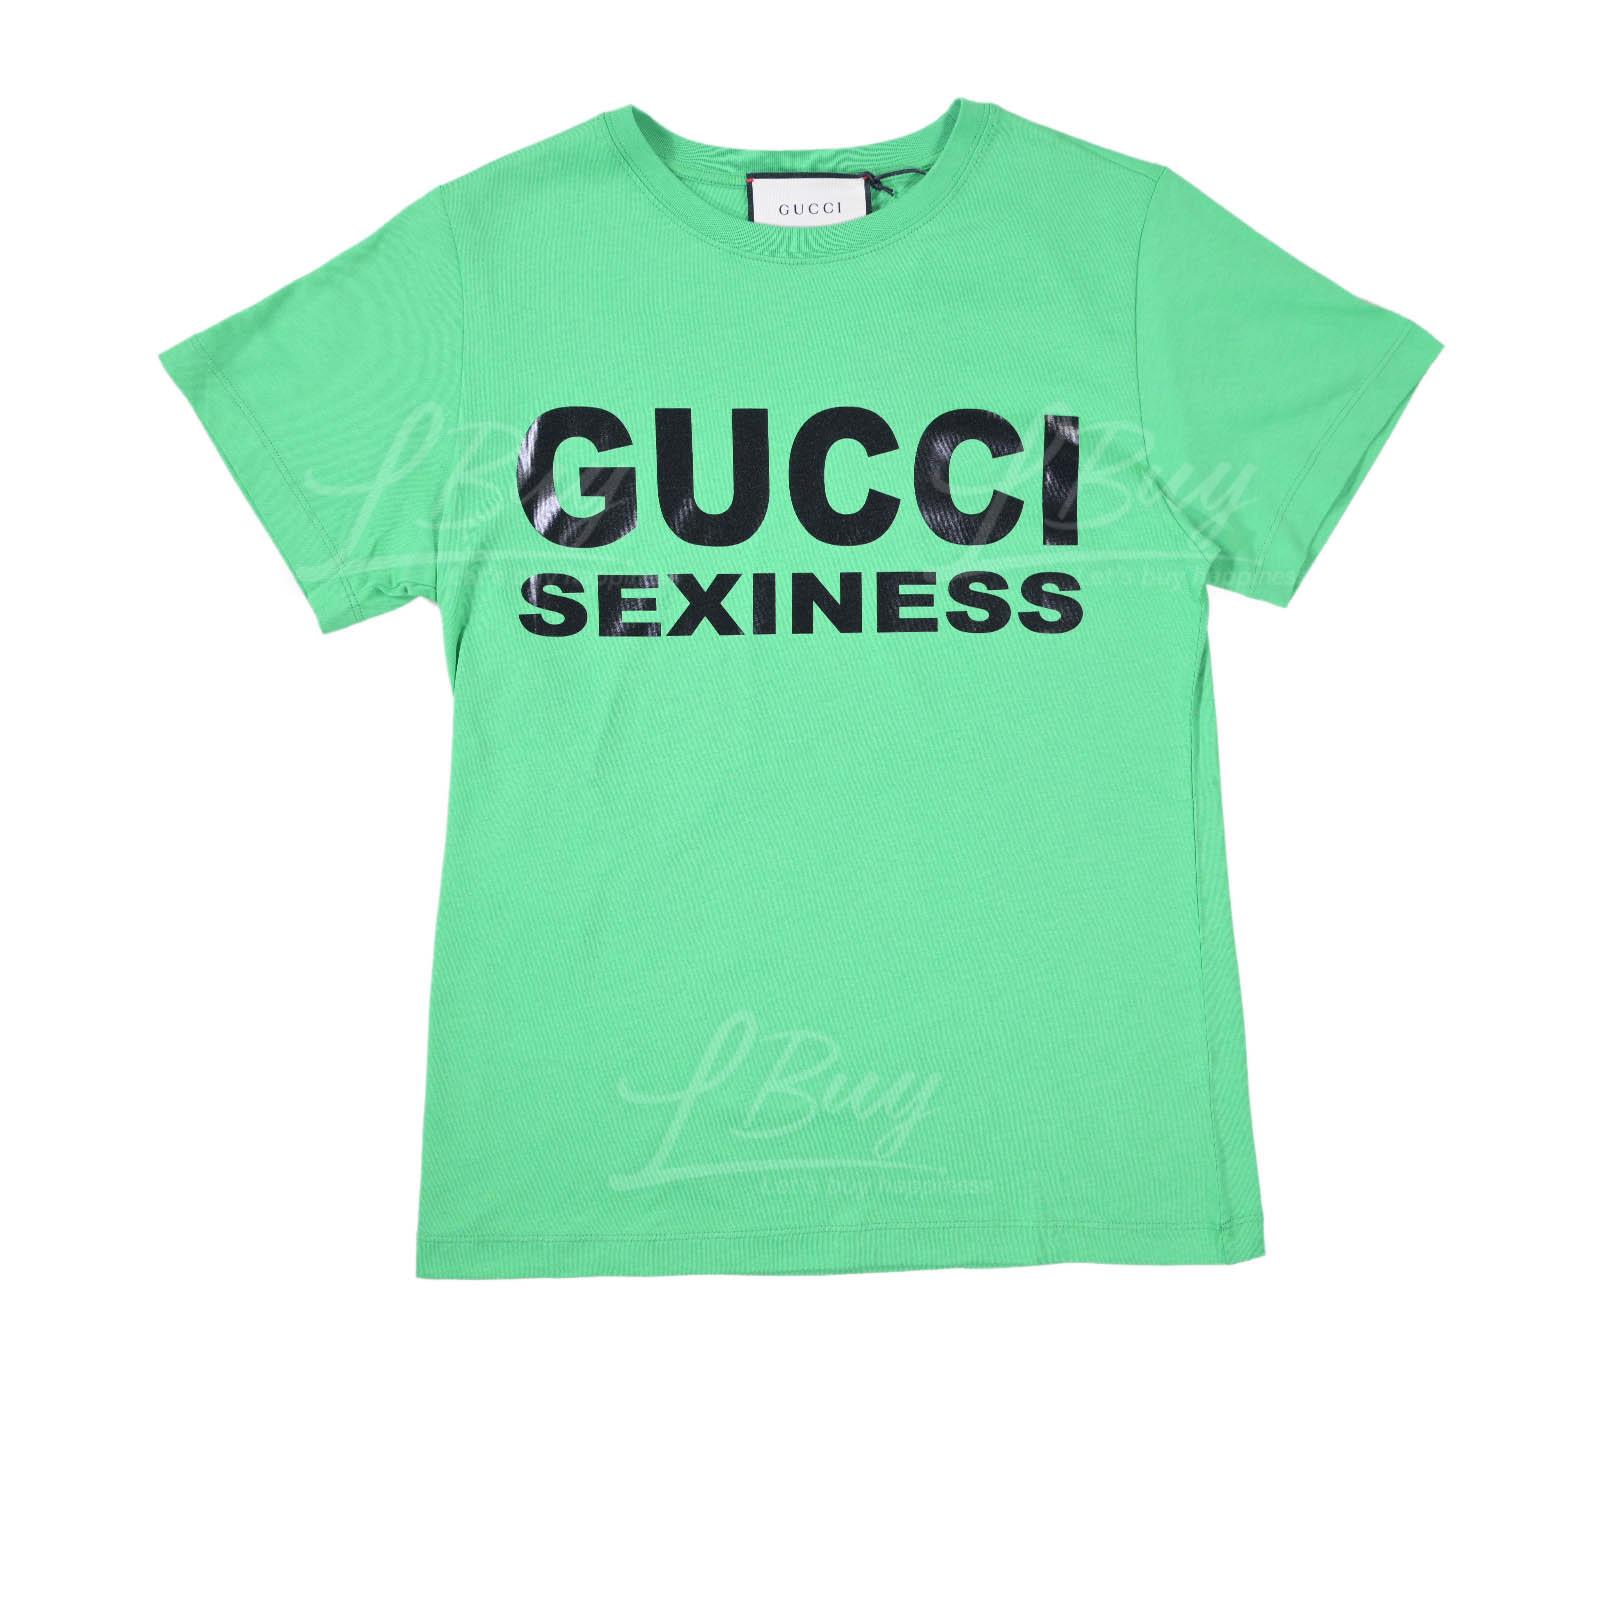 Gucci Sexiness Short Sleeve T-Shirt Green